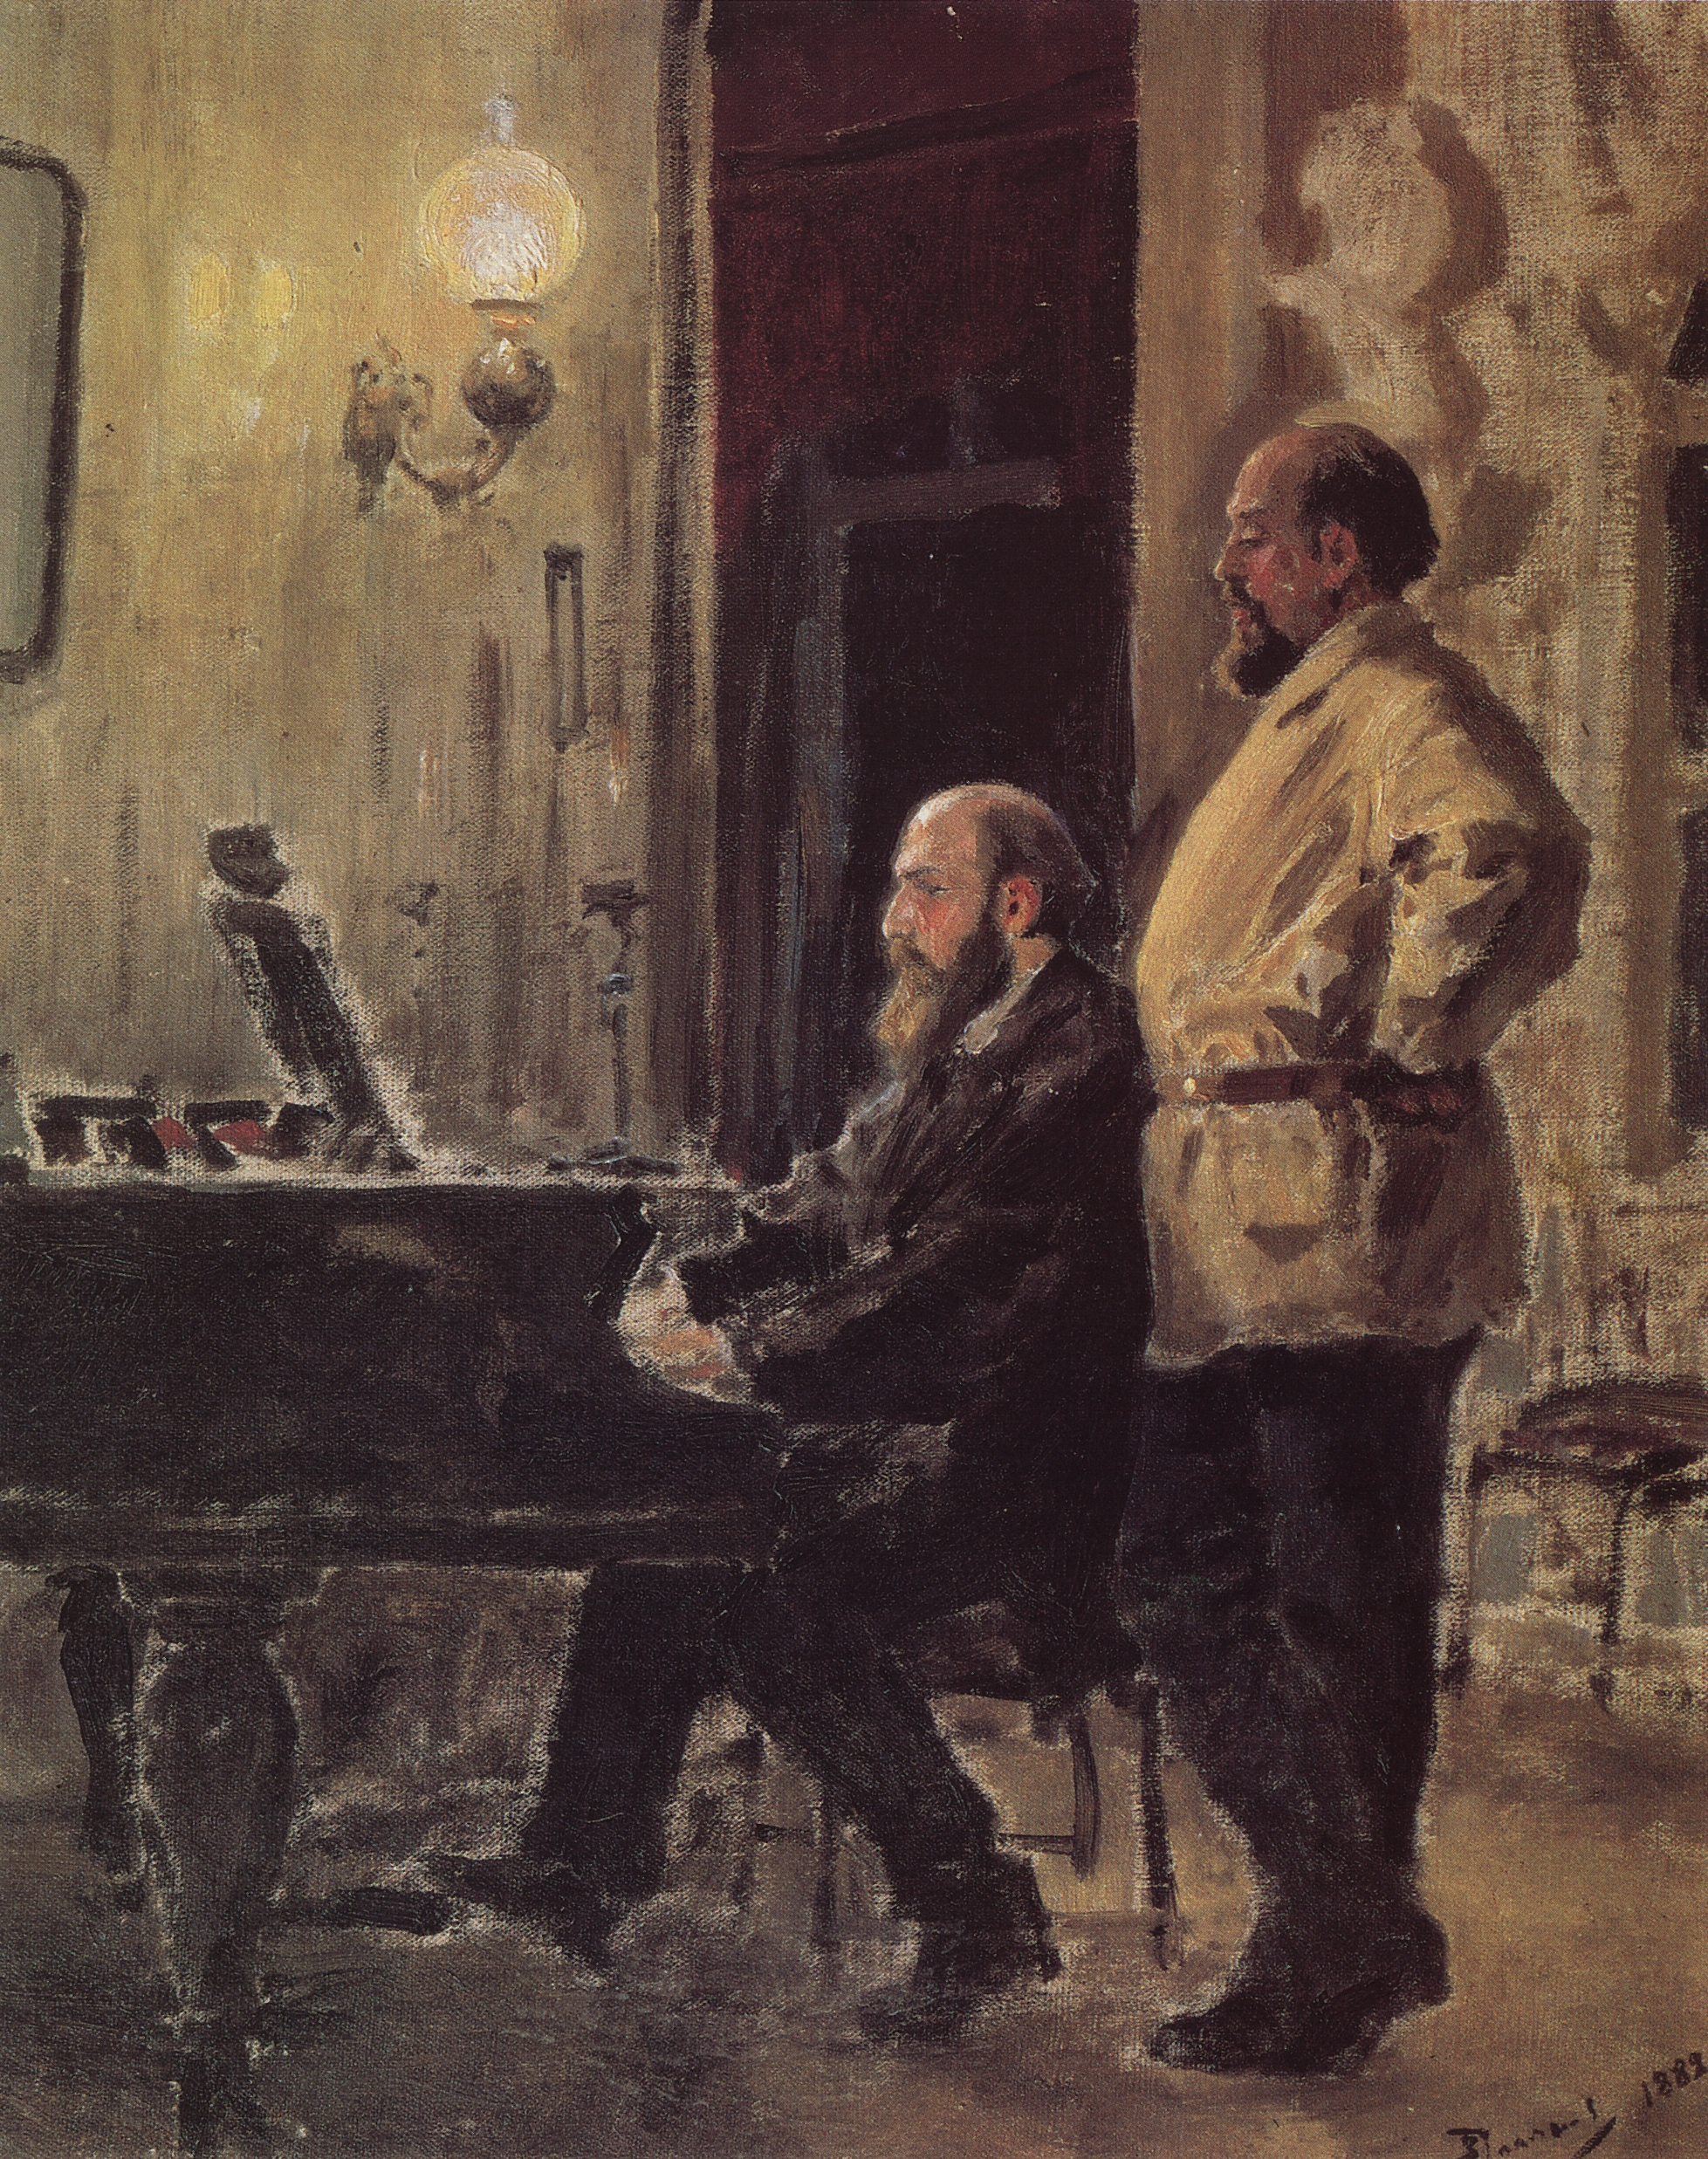 Поленов. С.И.Мамонтов и П.А.Спиро у рояля. 1882